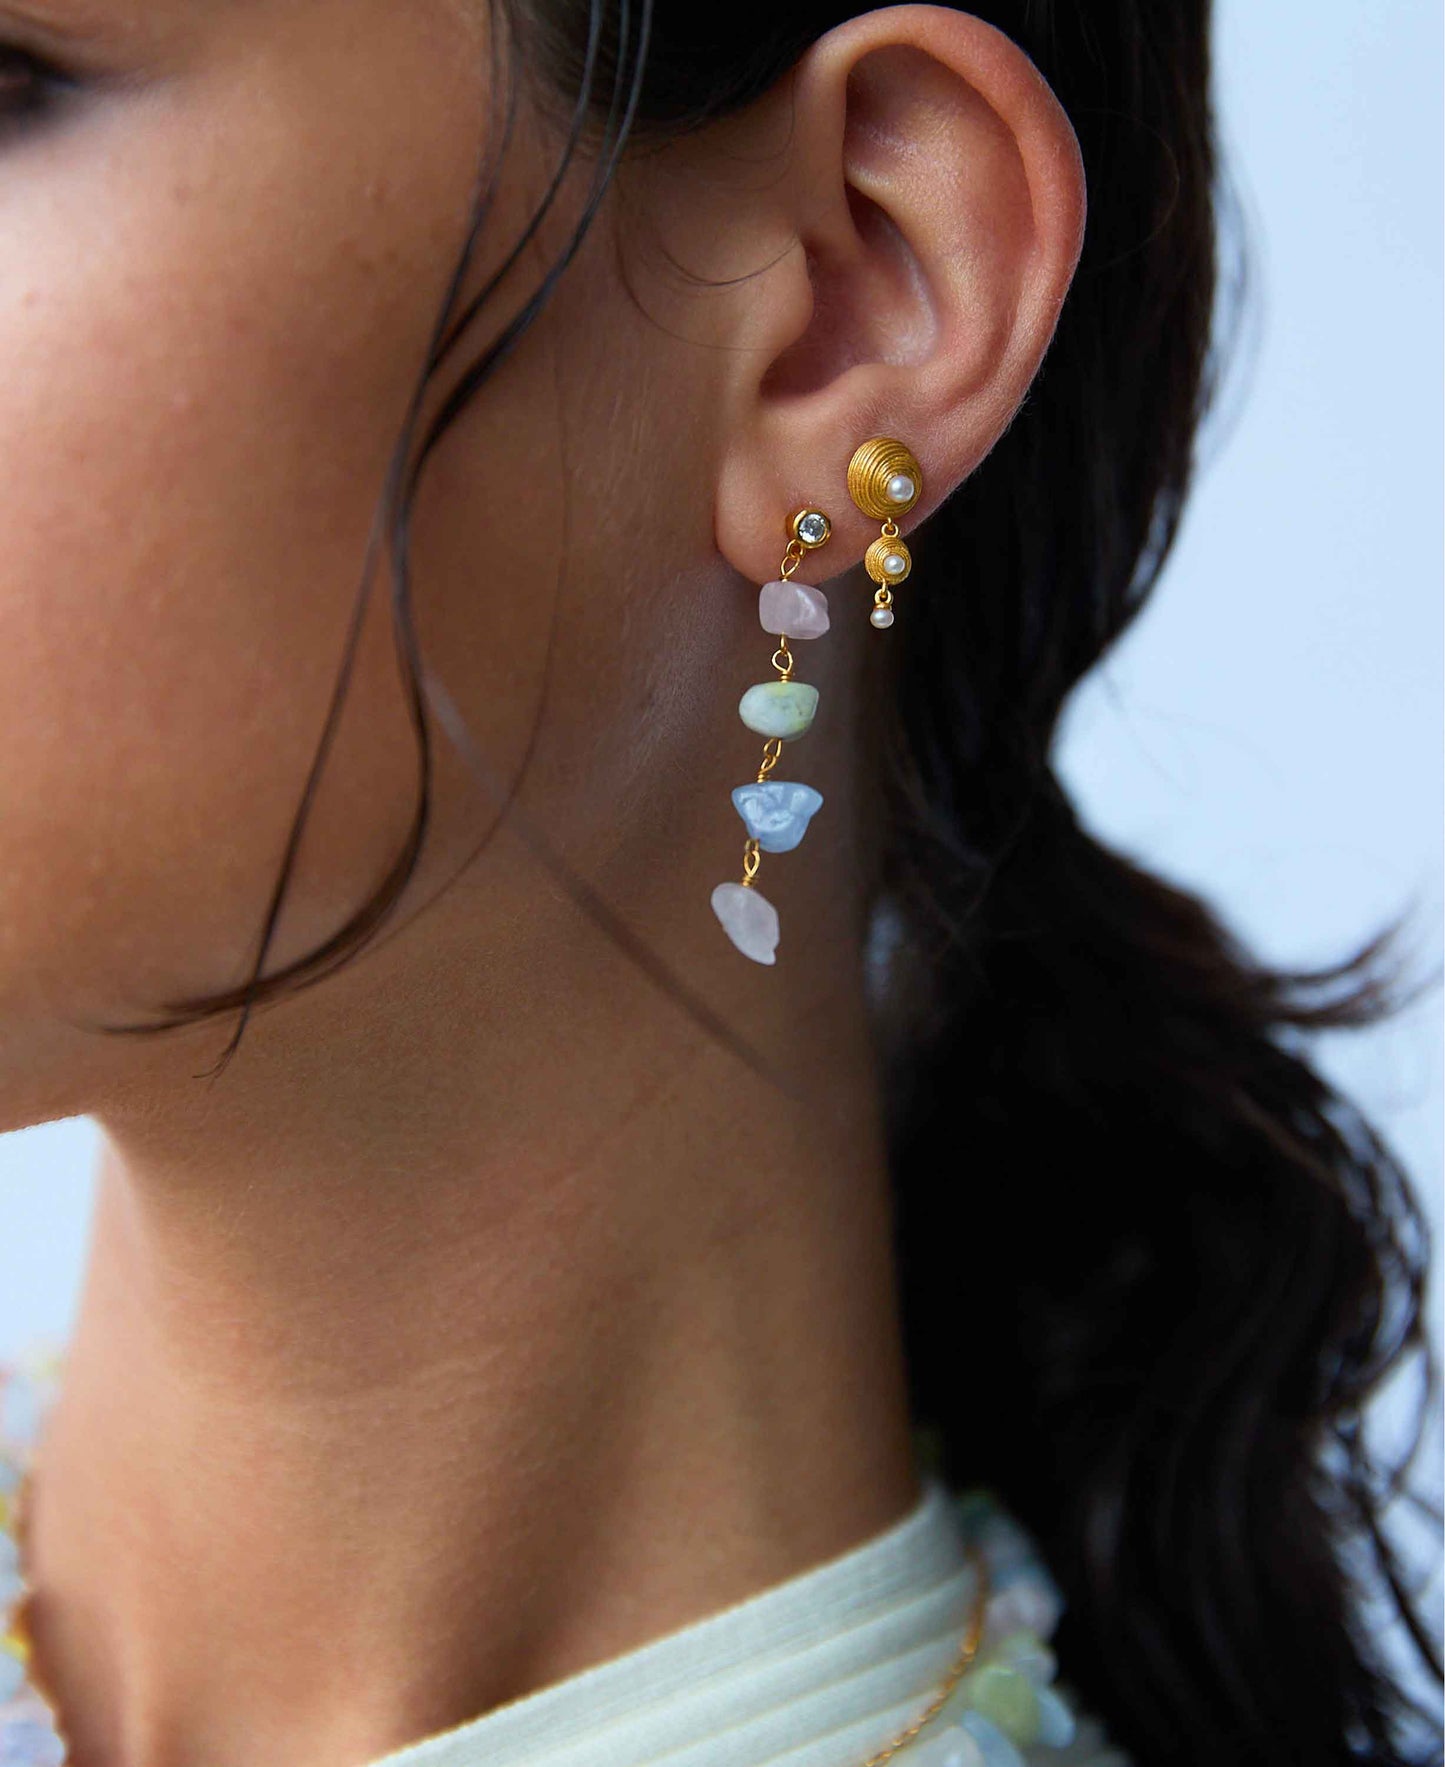 Shelly double earrings